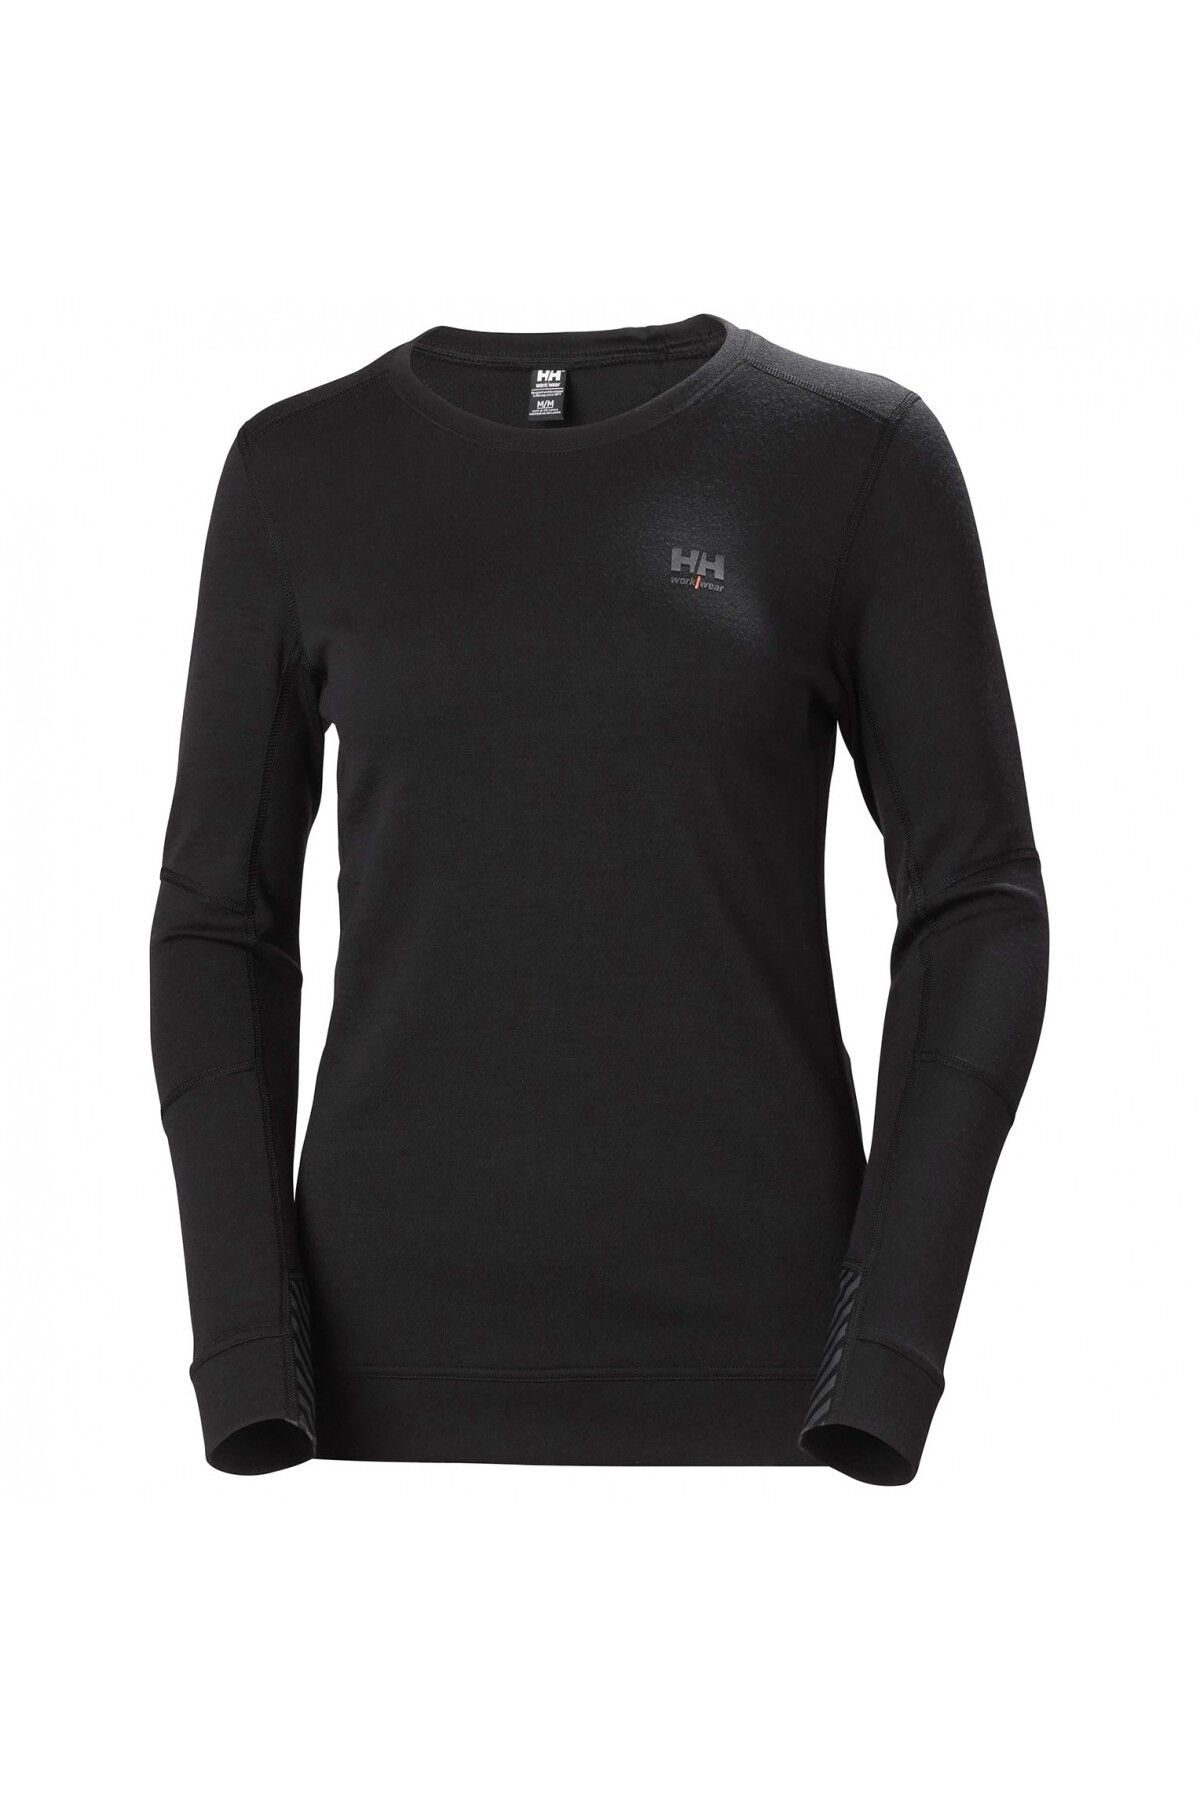 Helly Hansen Workwear Adın Lıfa Kadın Sweatshirt -75209